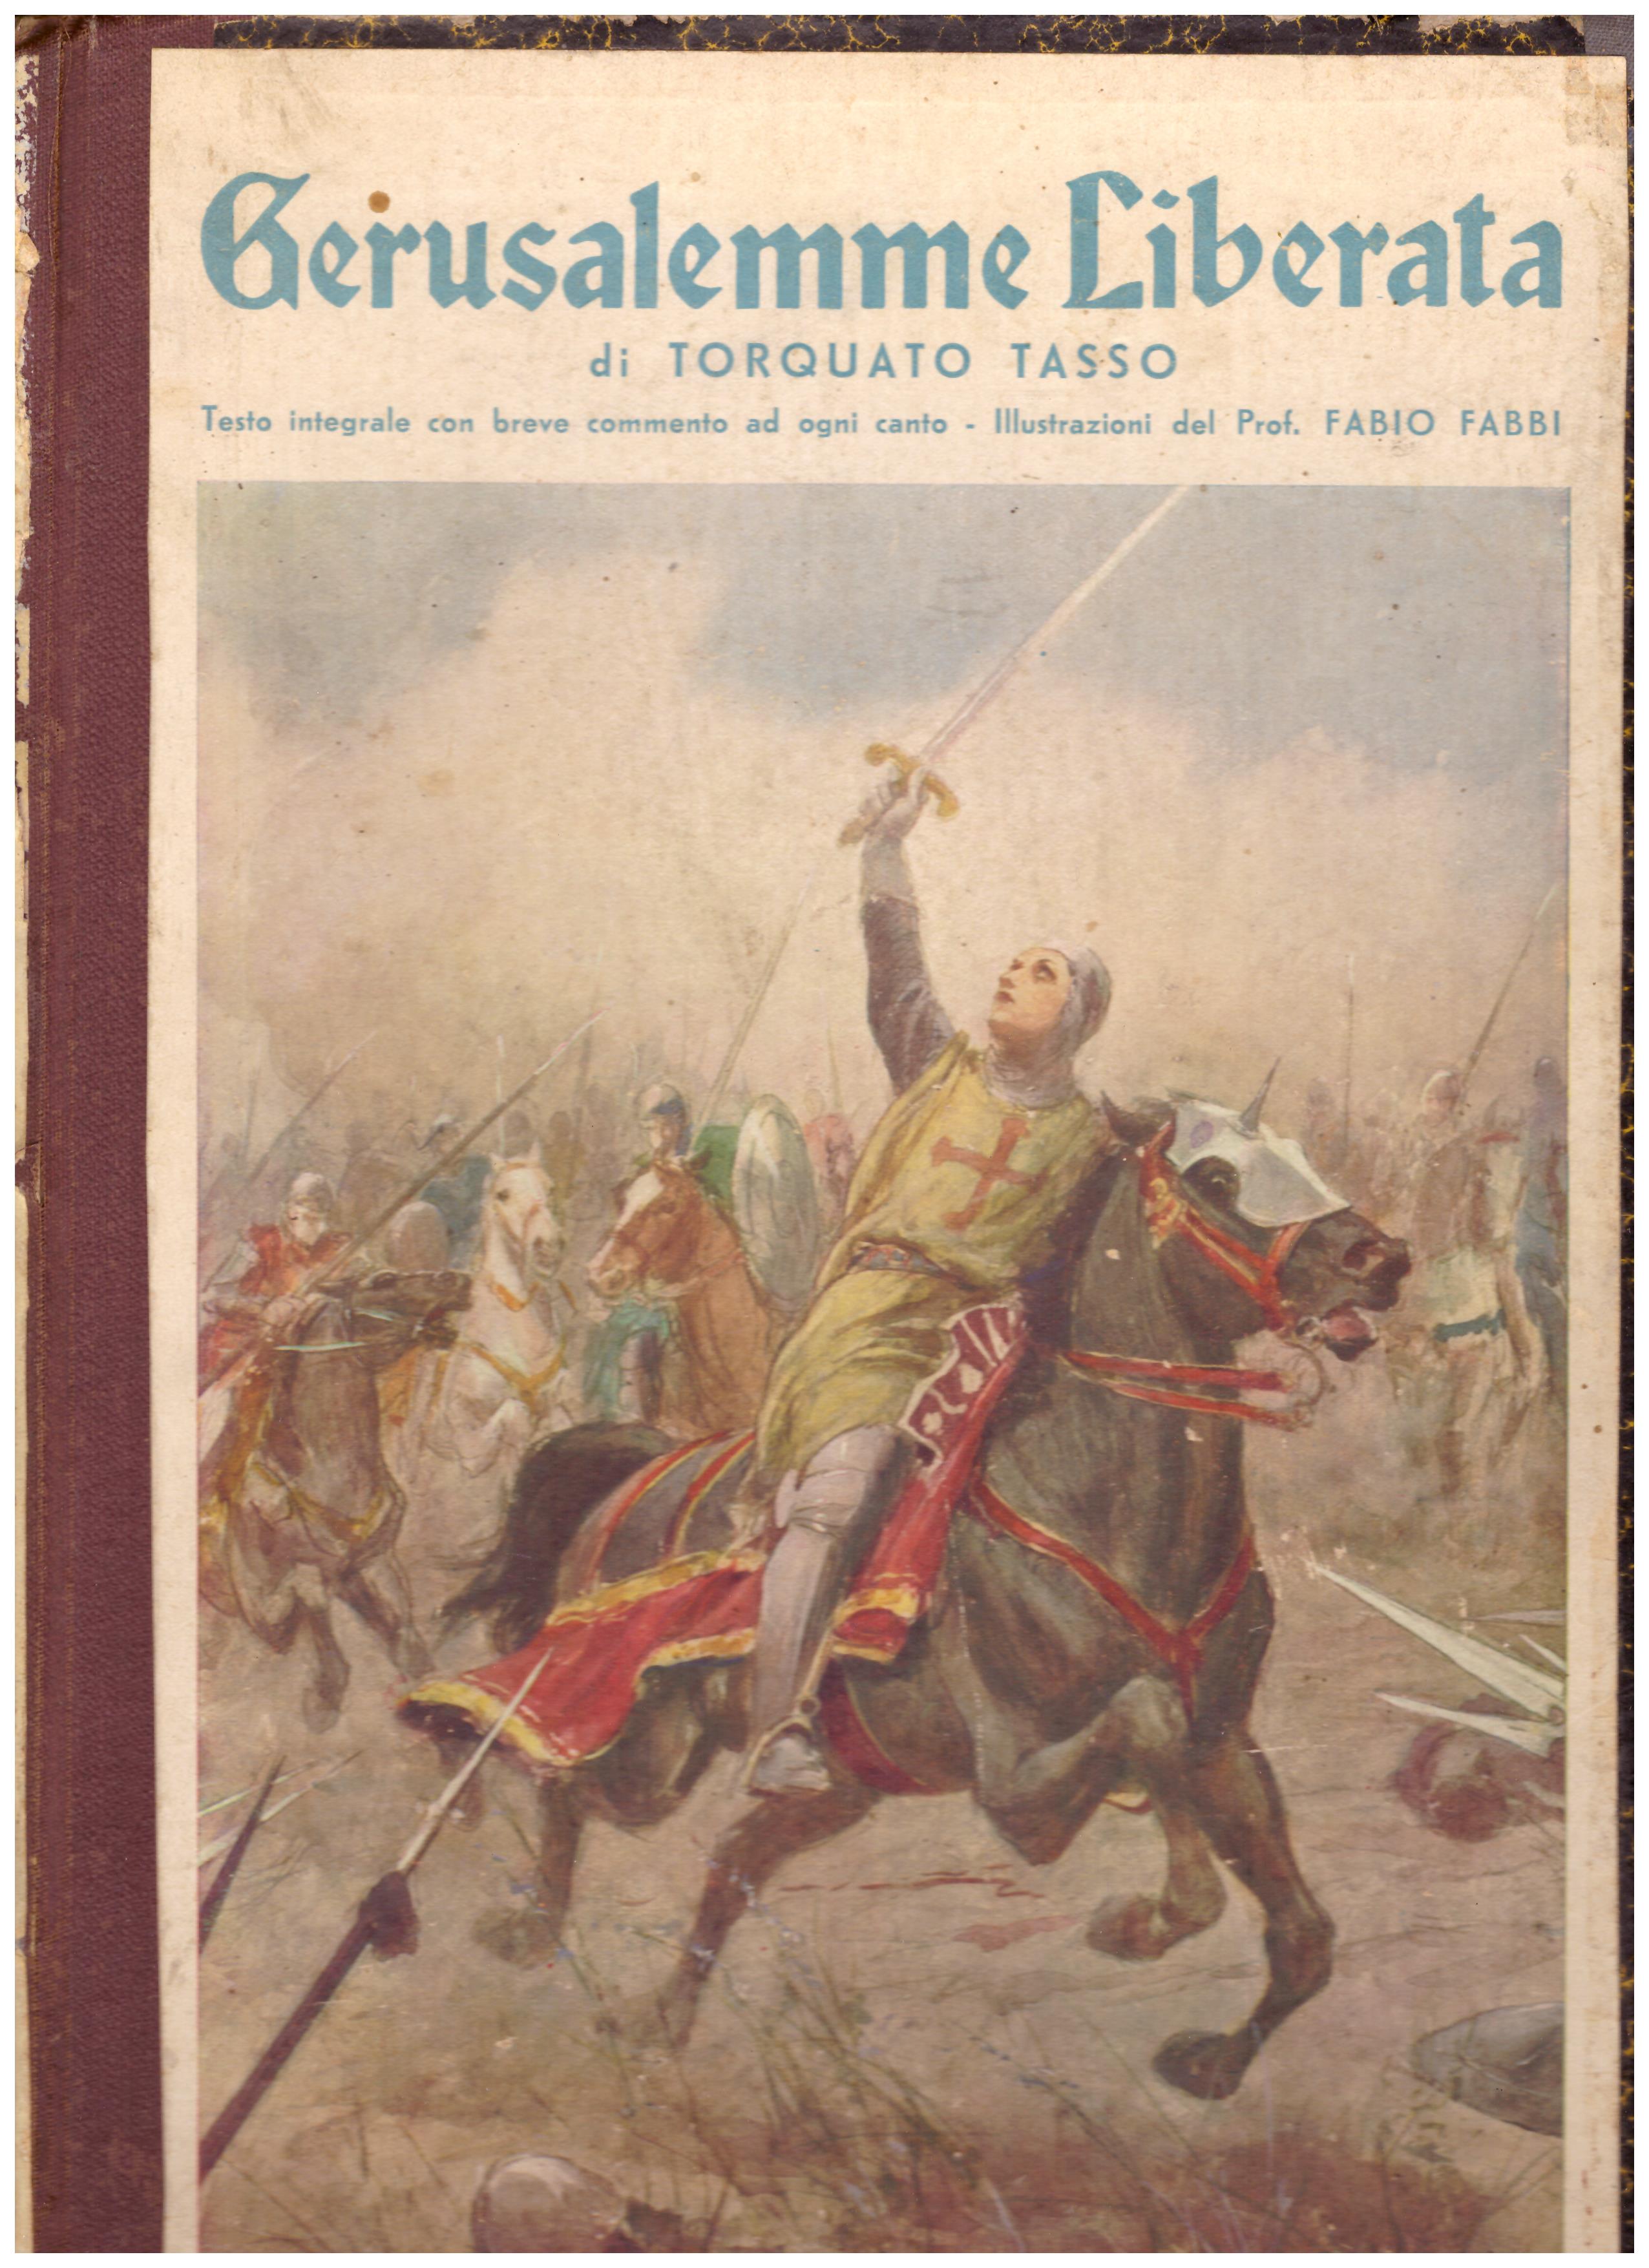 Titolo: Gerusalemme liberata Autore: Torquato Tasso Editore: G. Nerbini, 1934